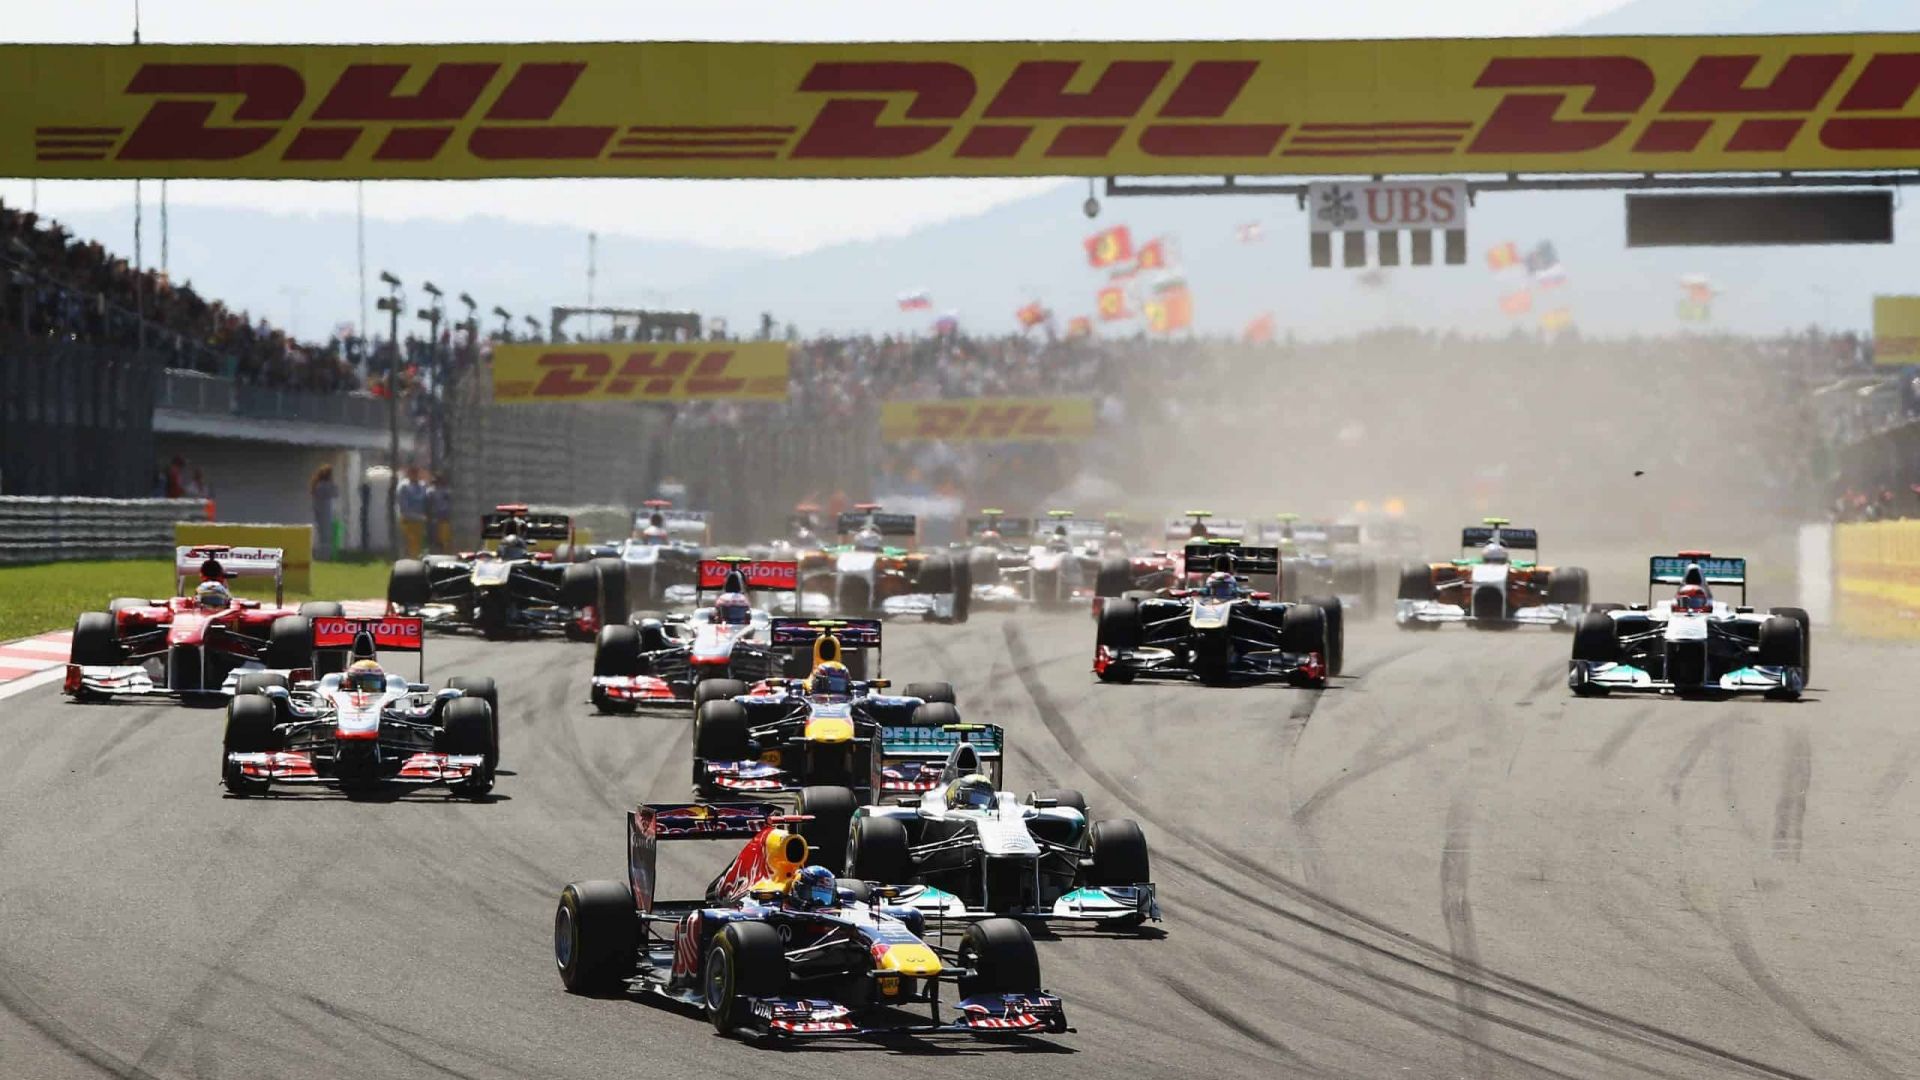 2011 Turkish Grand Prix